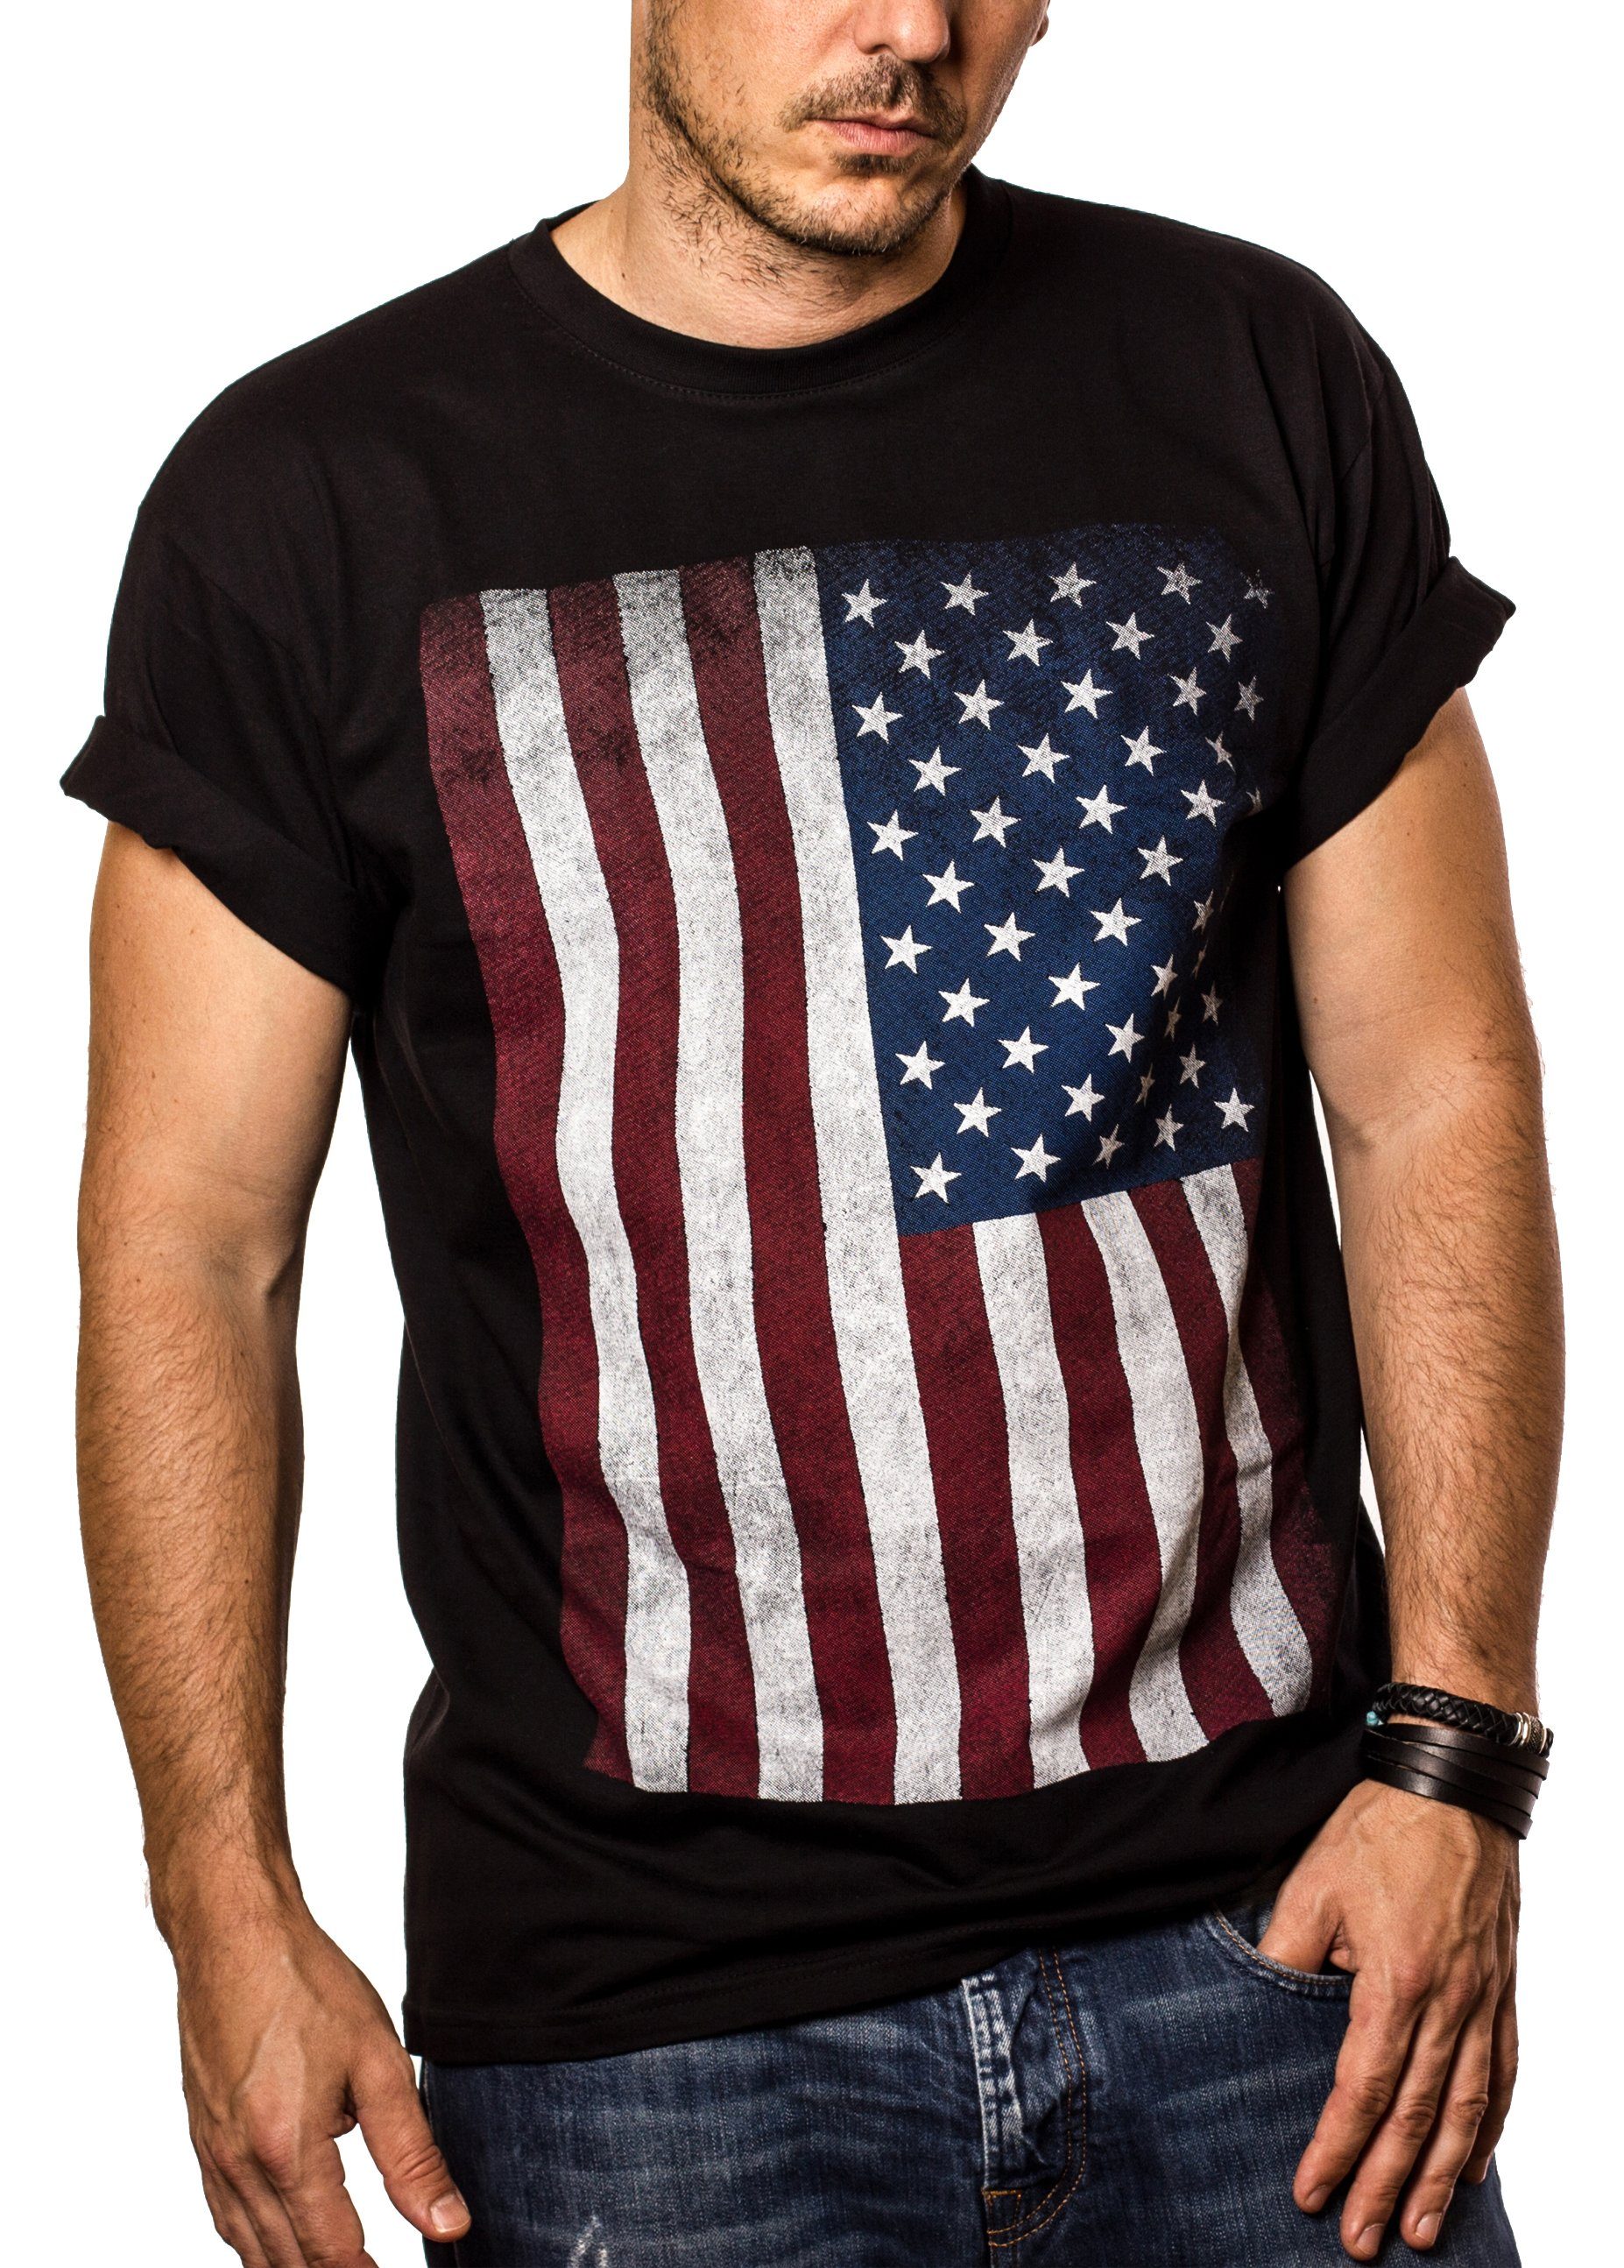 Druck, Army MAKAYA Fahne US Vintage Amerika T-Shirt Männer aus Print-Shirt Armee Schwarz USA Flagge Herren mit Baumwolle